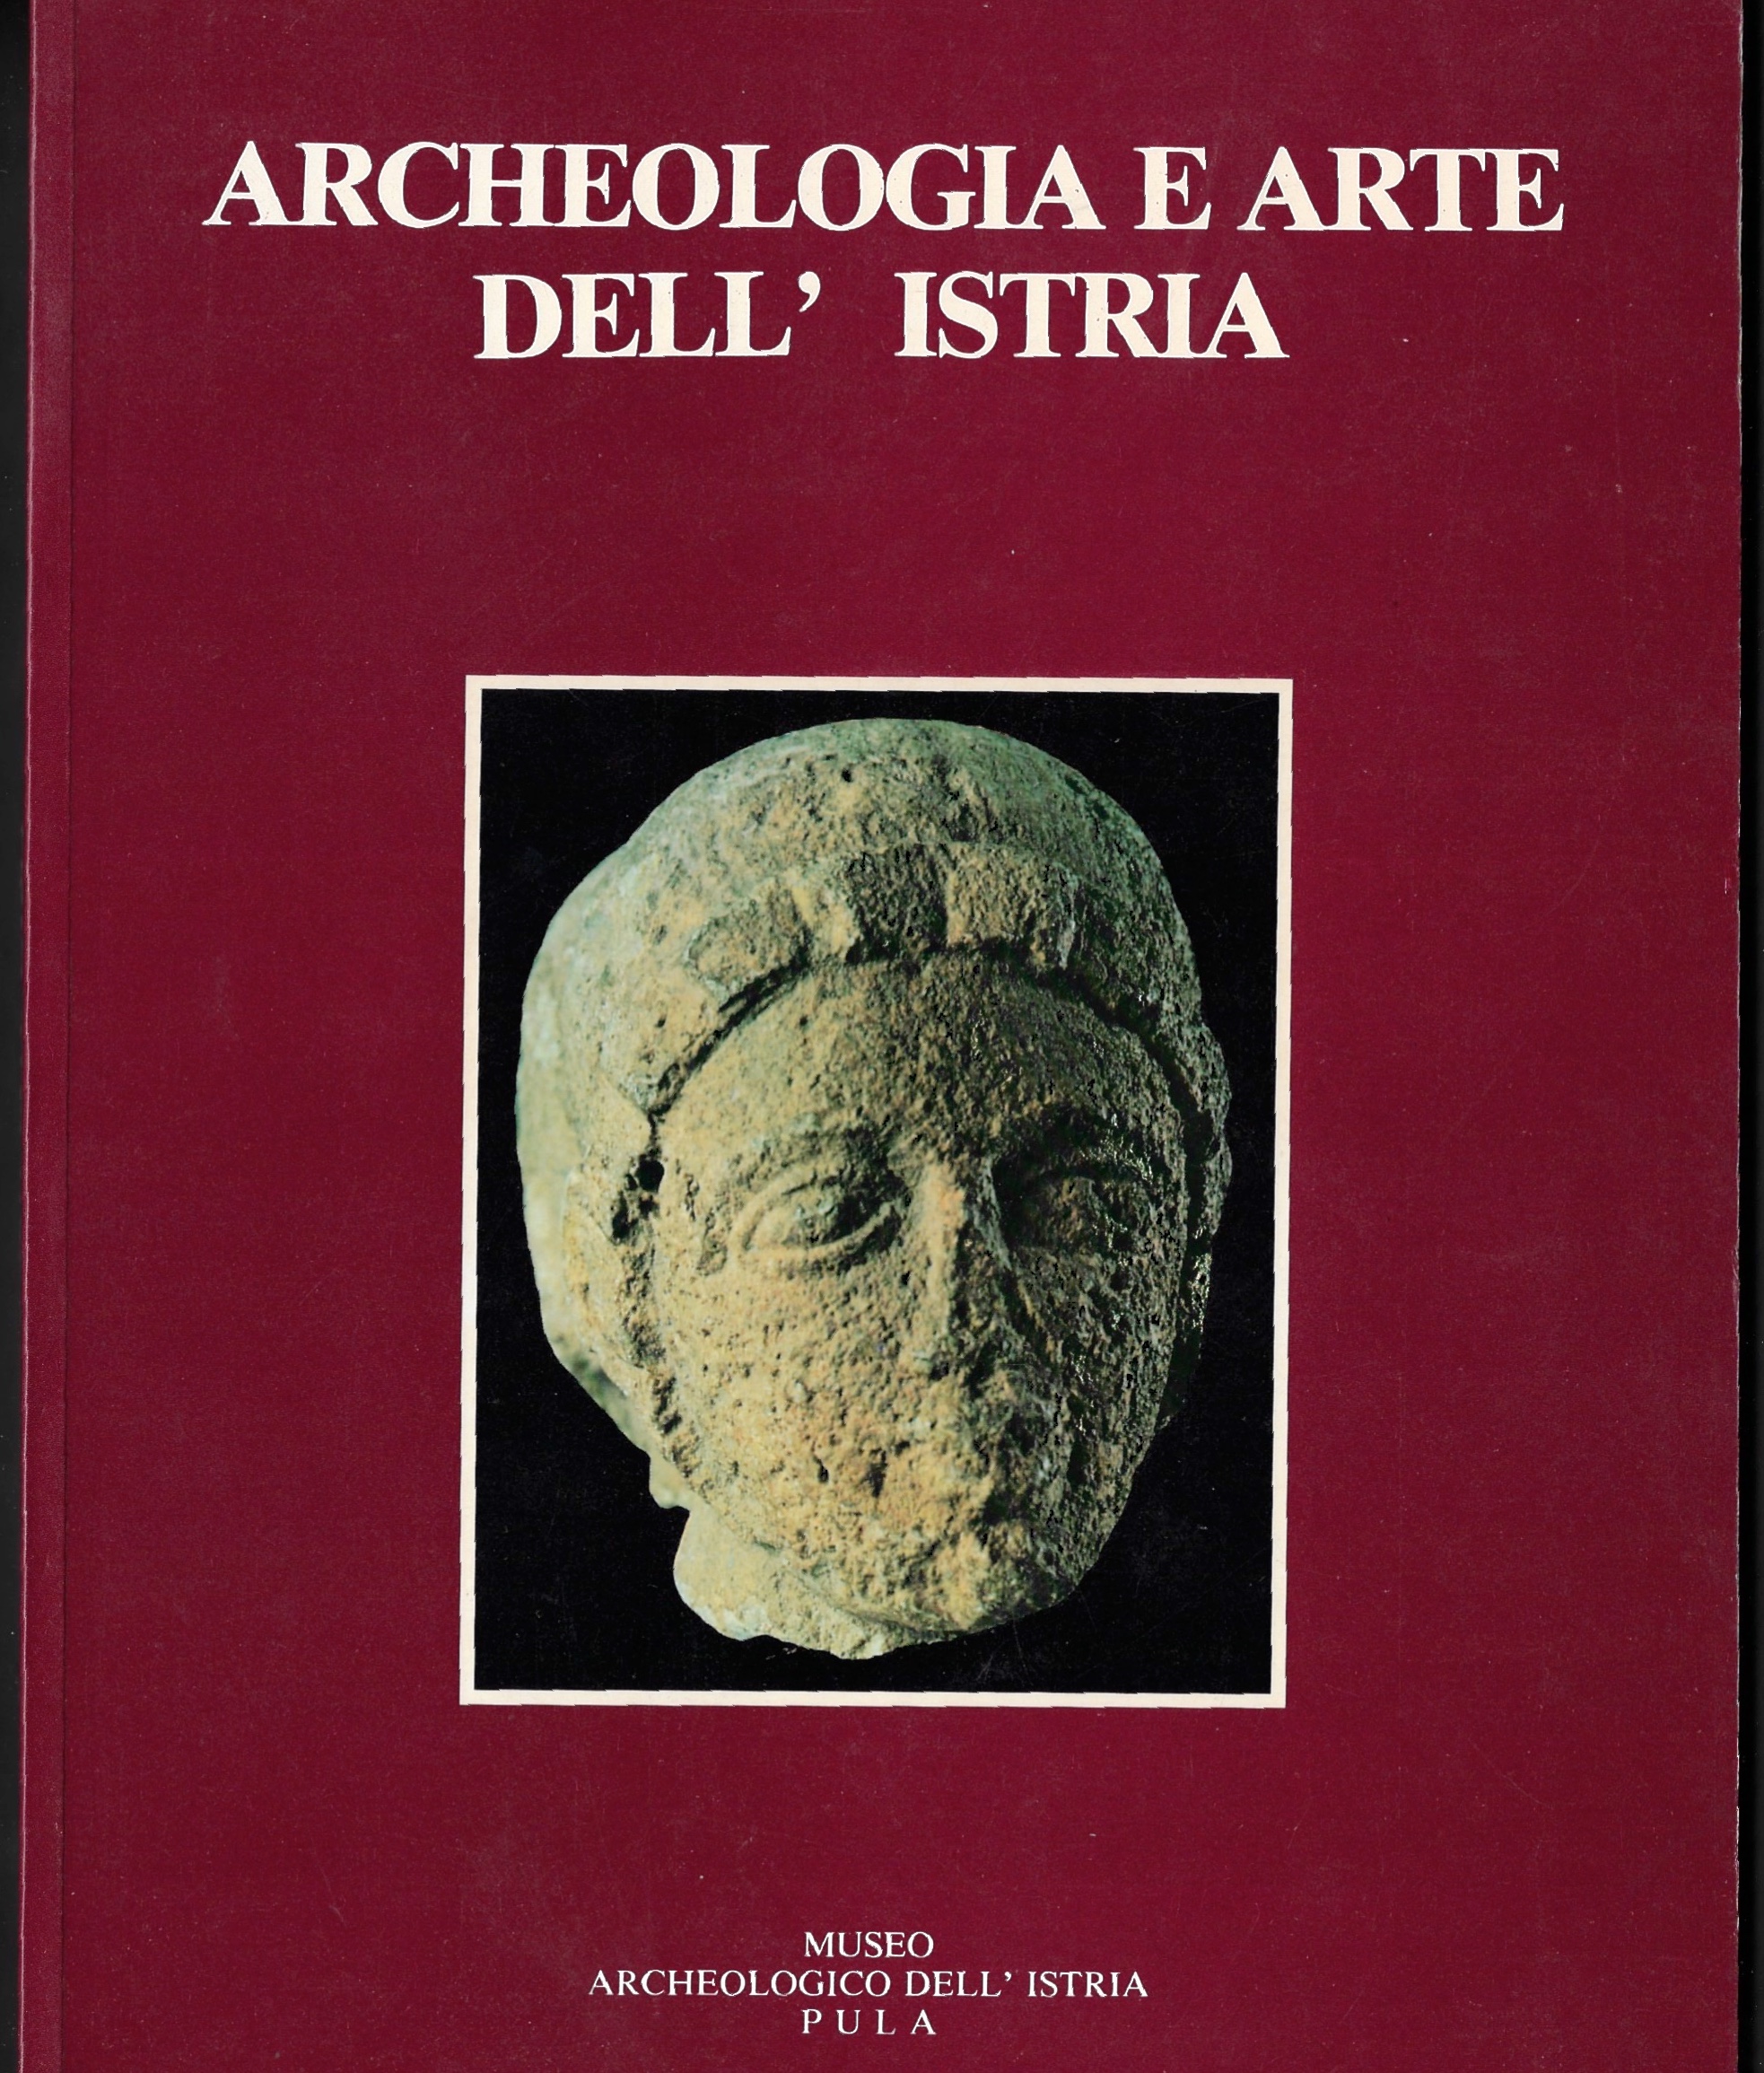 Archeologia e Arte dell'Istria by Crivellari, Domenico - Mihovilic ...